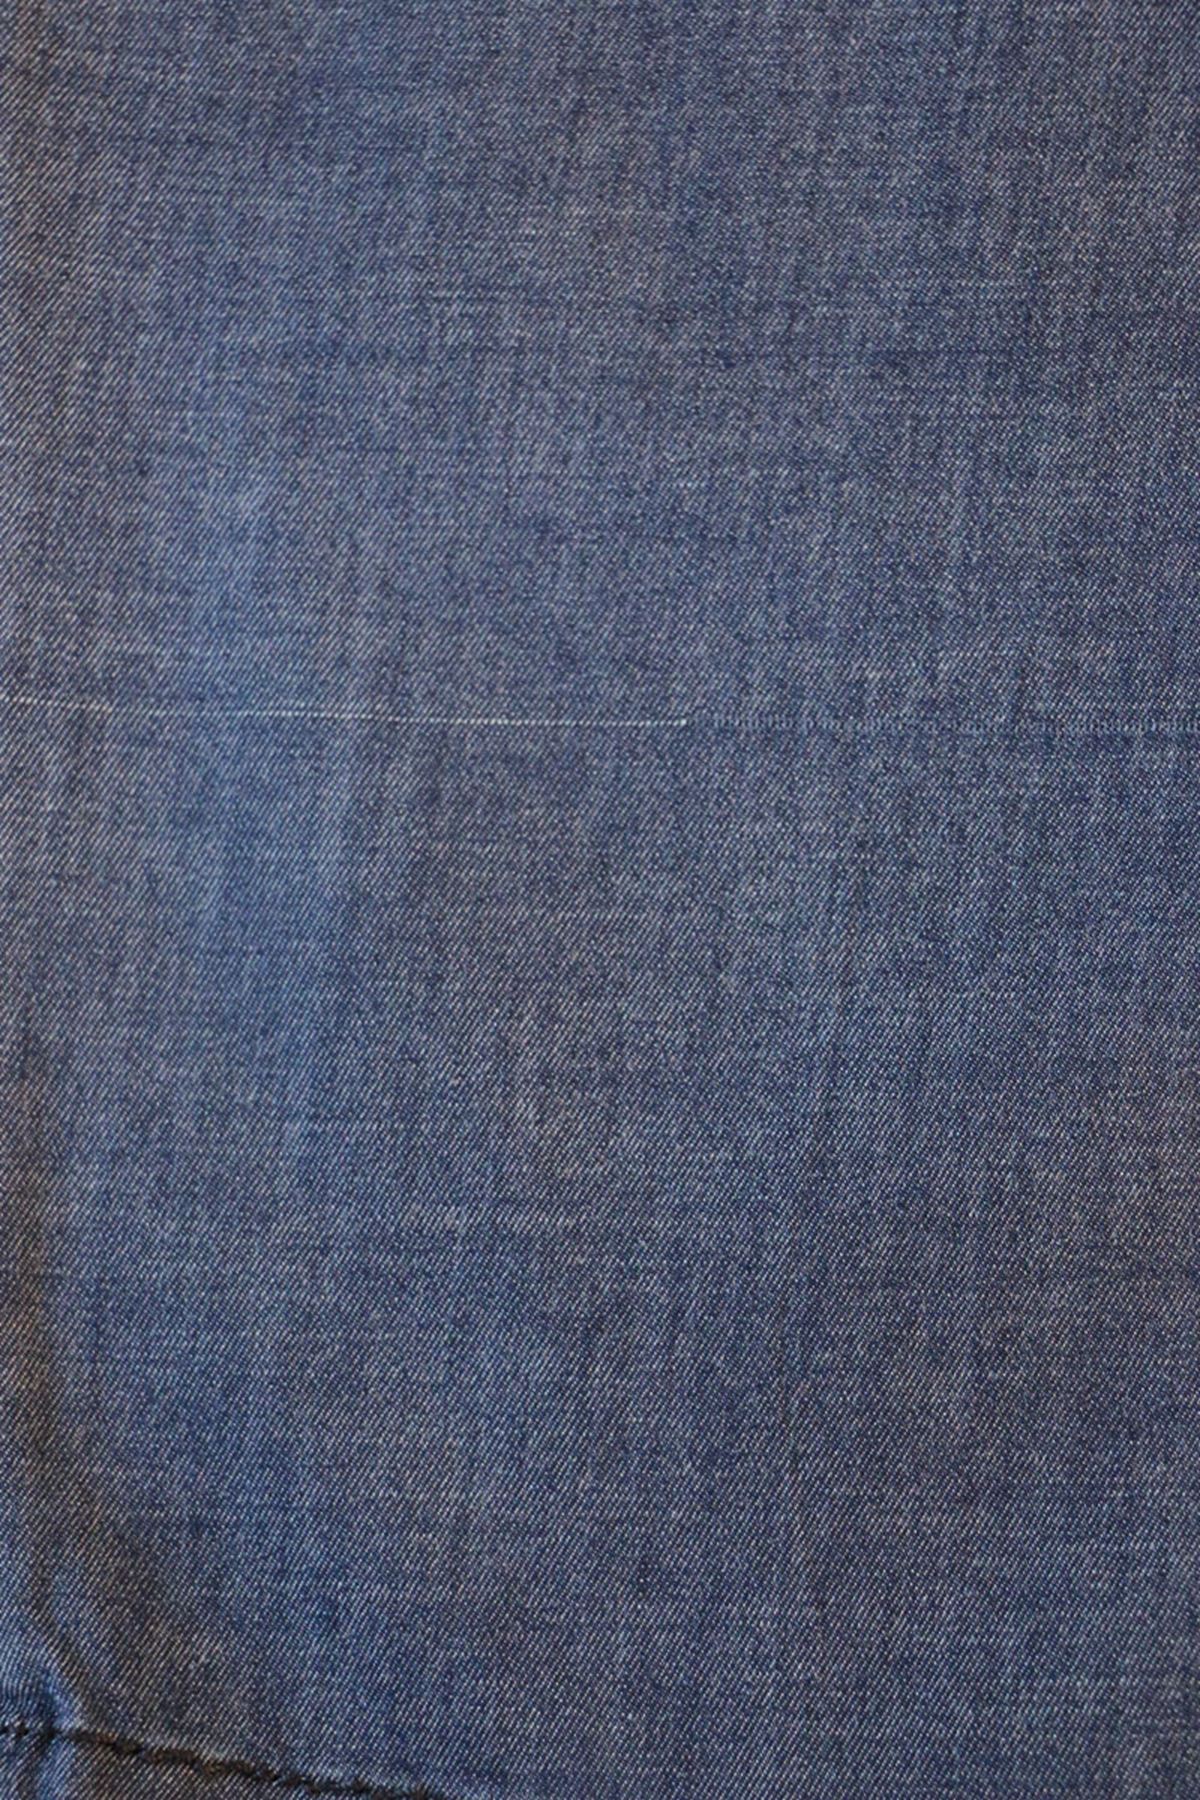 D-9183-6 Büyük Beden Dar Paça Uzun Boy Defolu Kot Pantolon - Buz Mavi